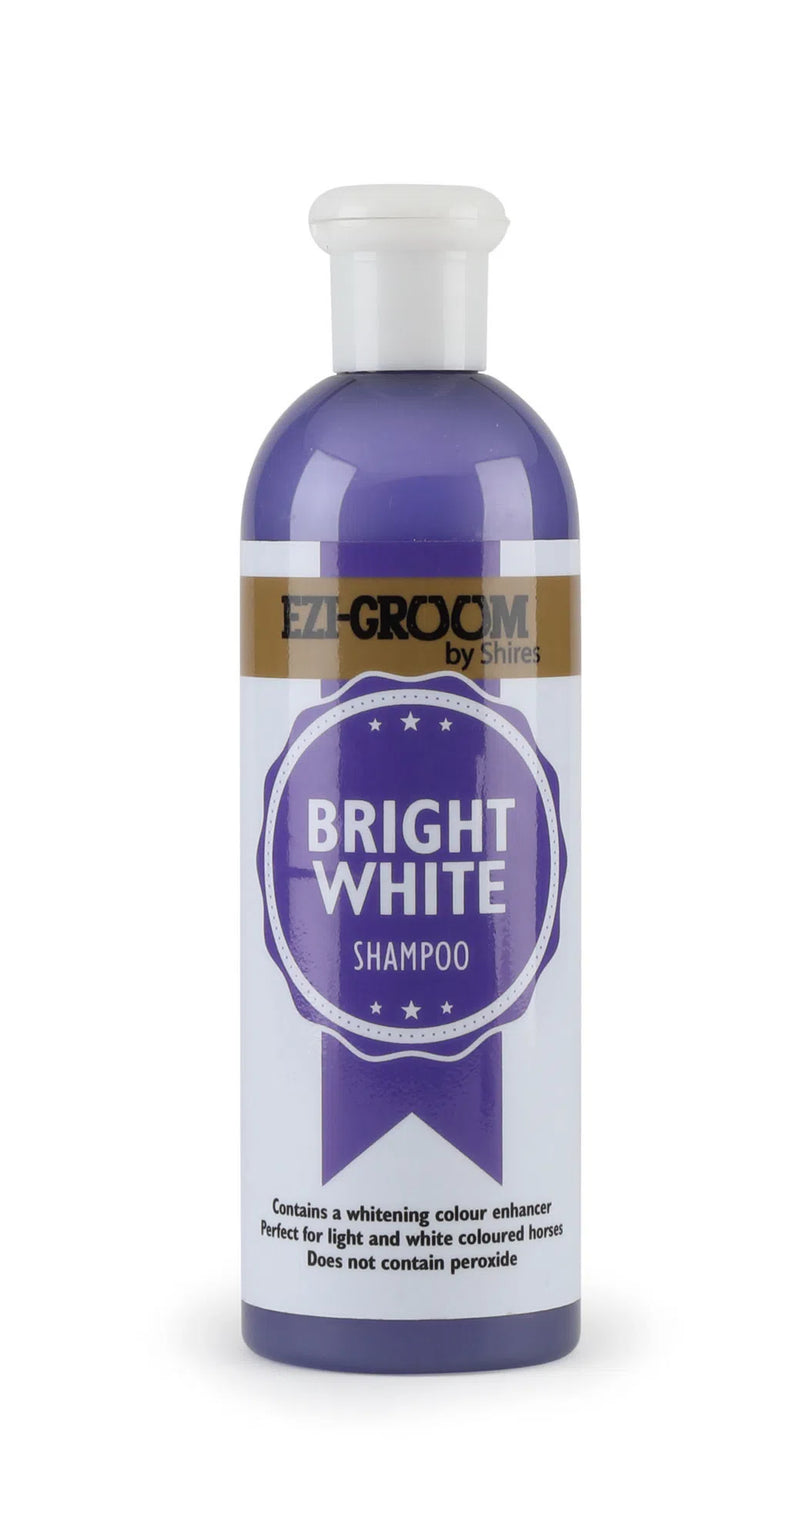 EZI-Groom Bright White Shampoo